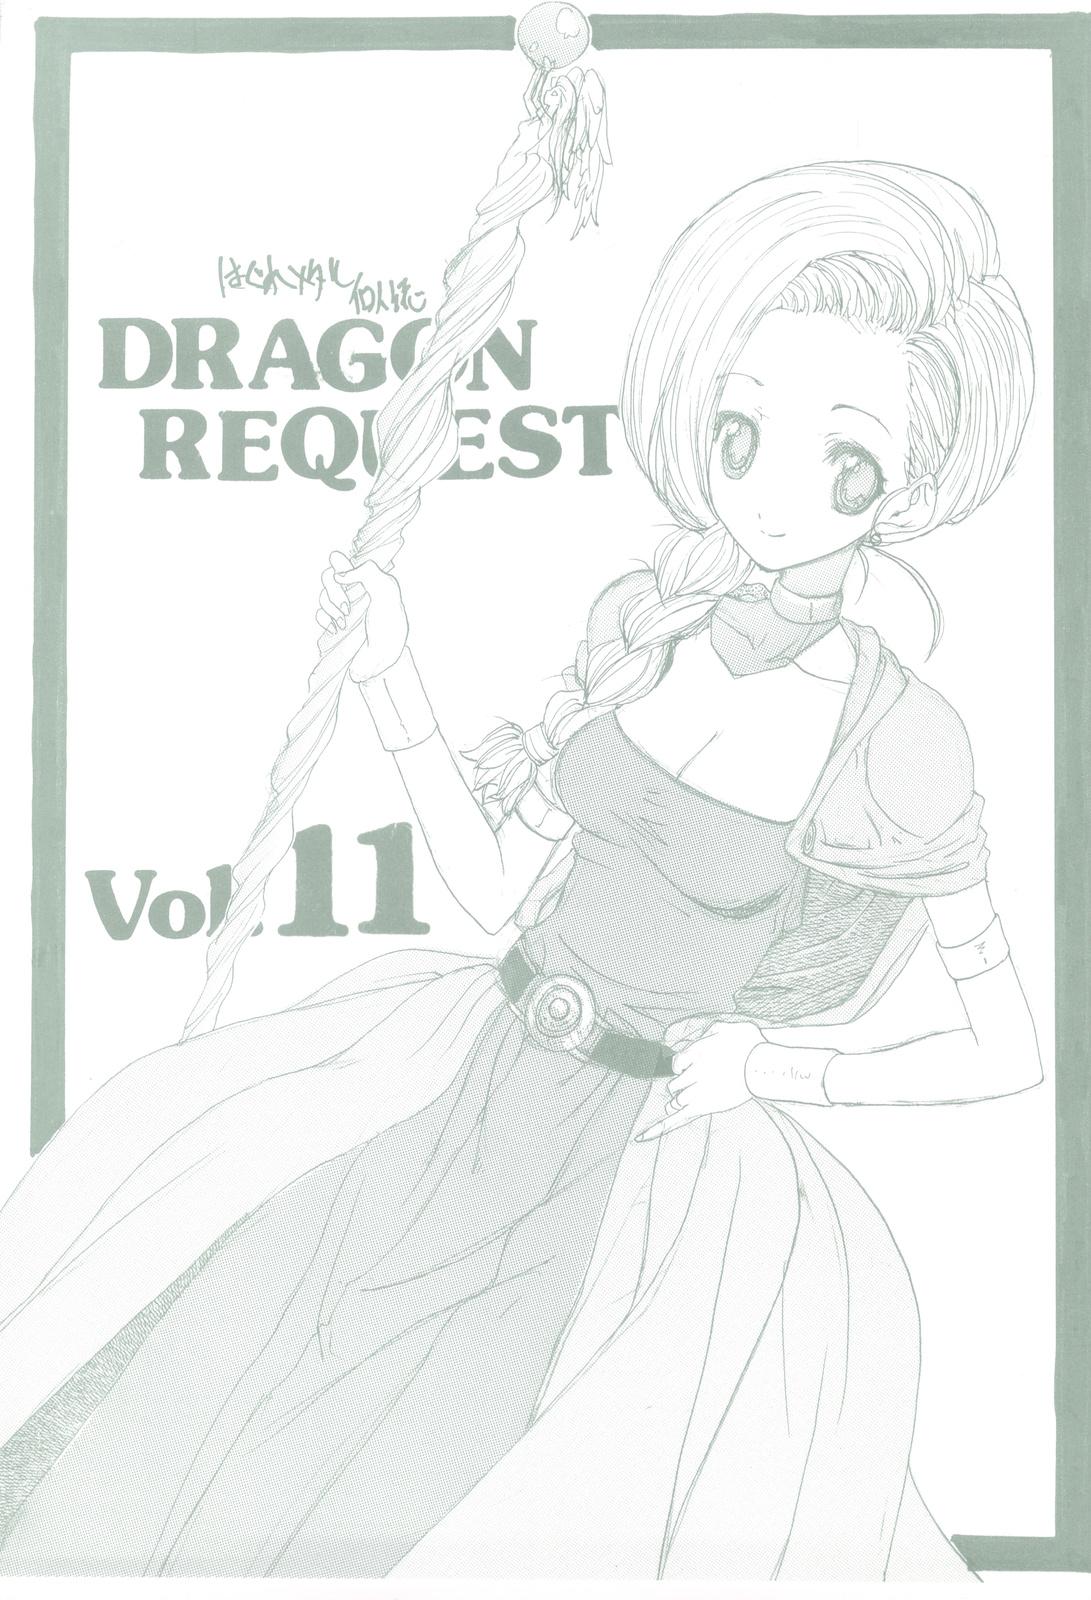 Husband DRAGON REQUEST Vol. 11 - Dragon quest v Sluts - Picture 1